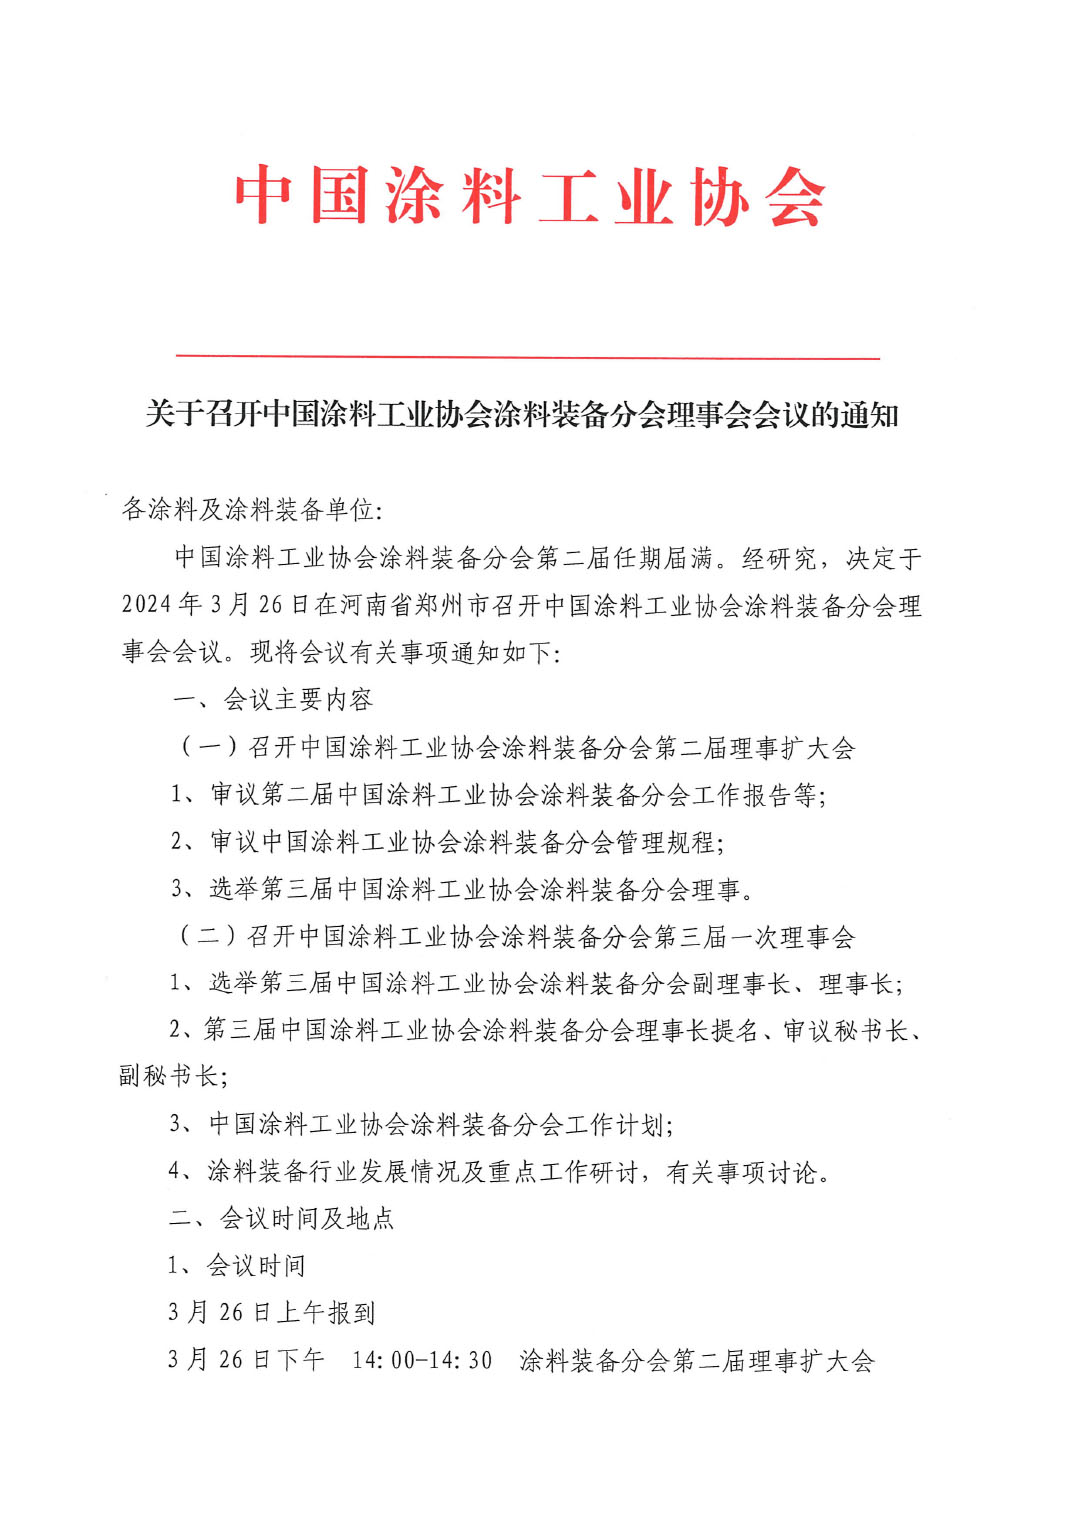 关于召开中国涂料工业协会涂料装备分会理事会的通知-1